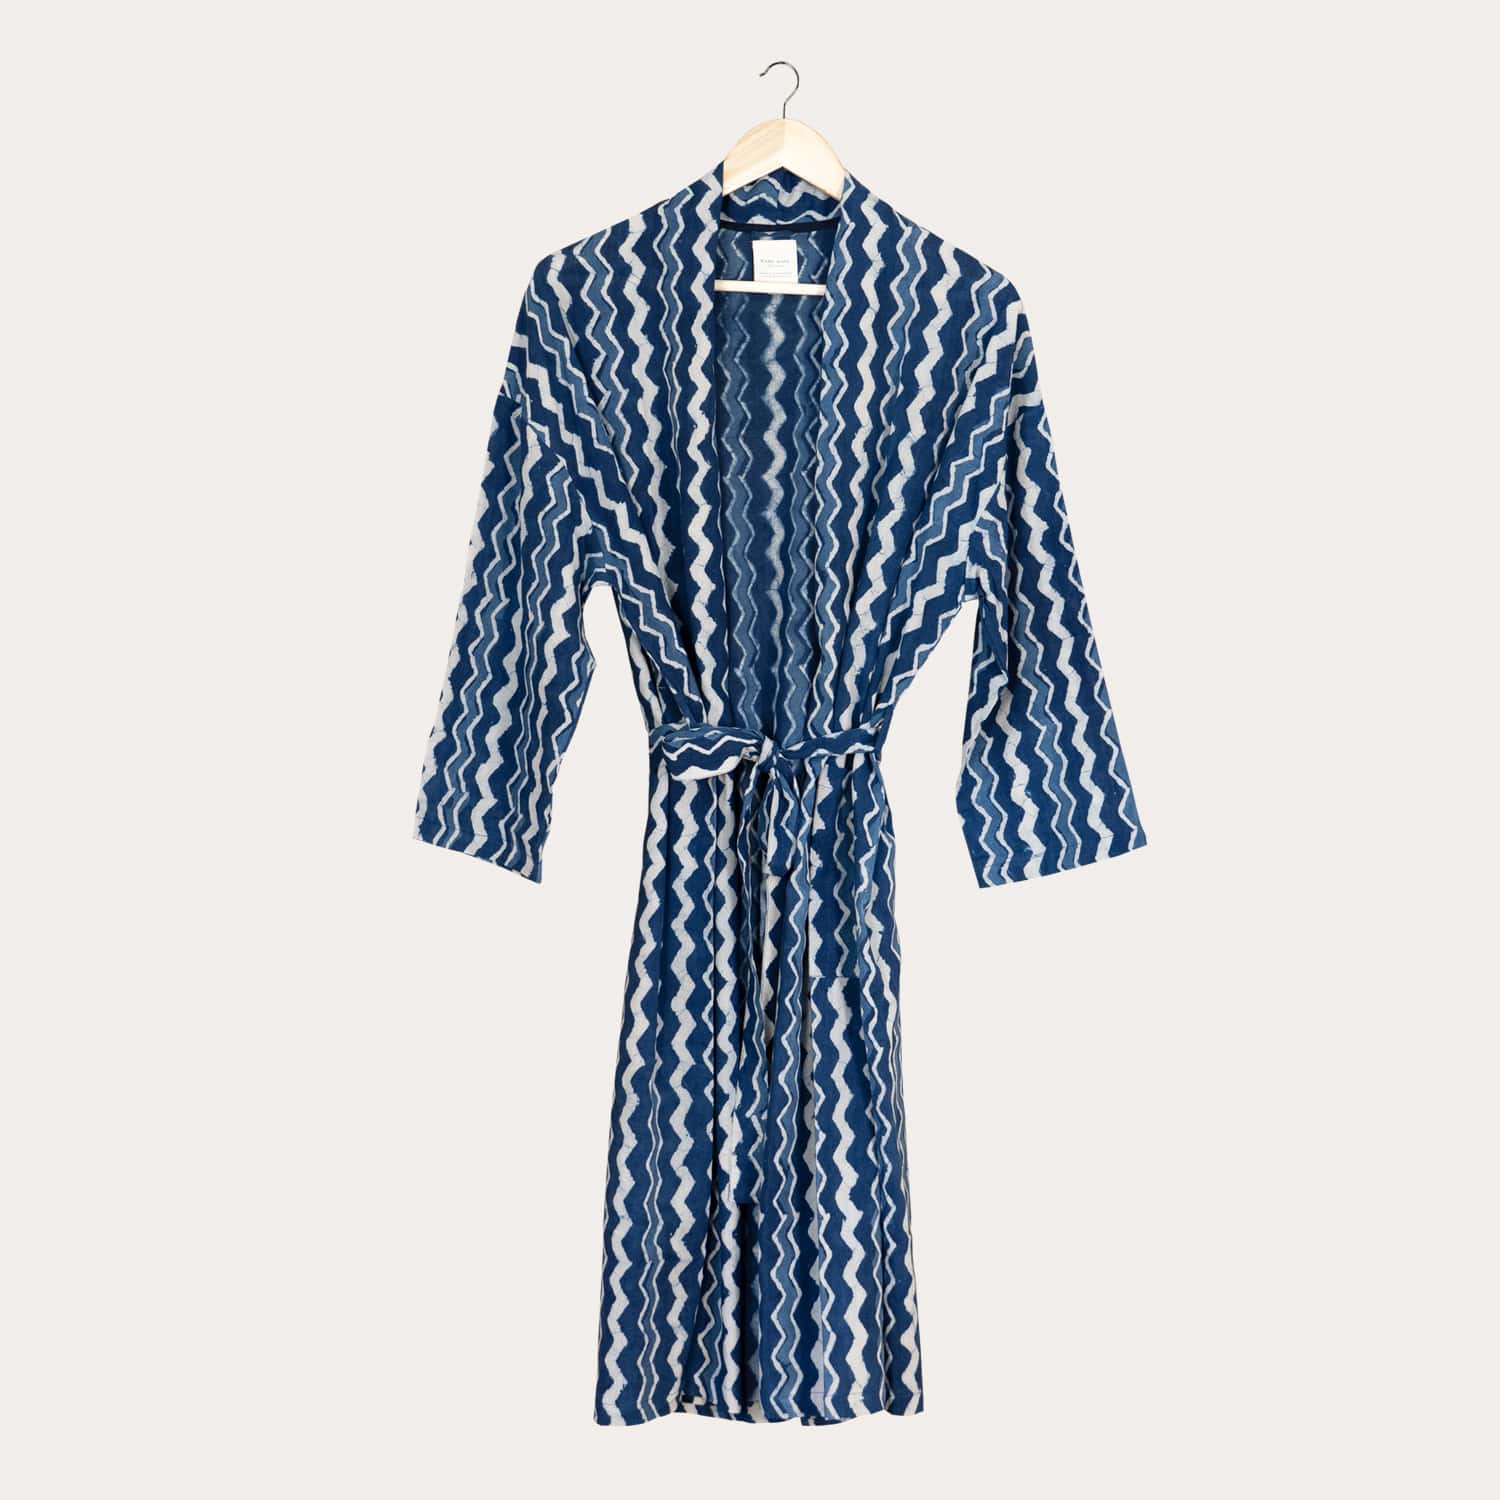 Kimono - Kasama - Indigo Stripes